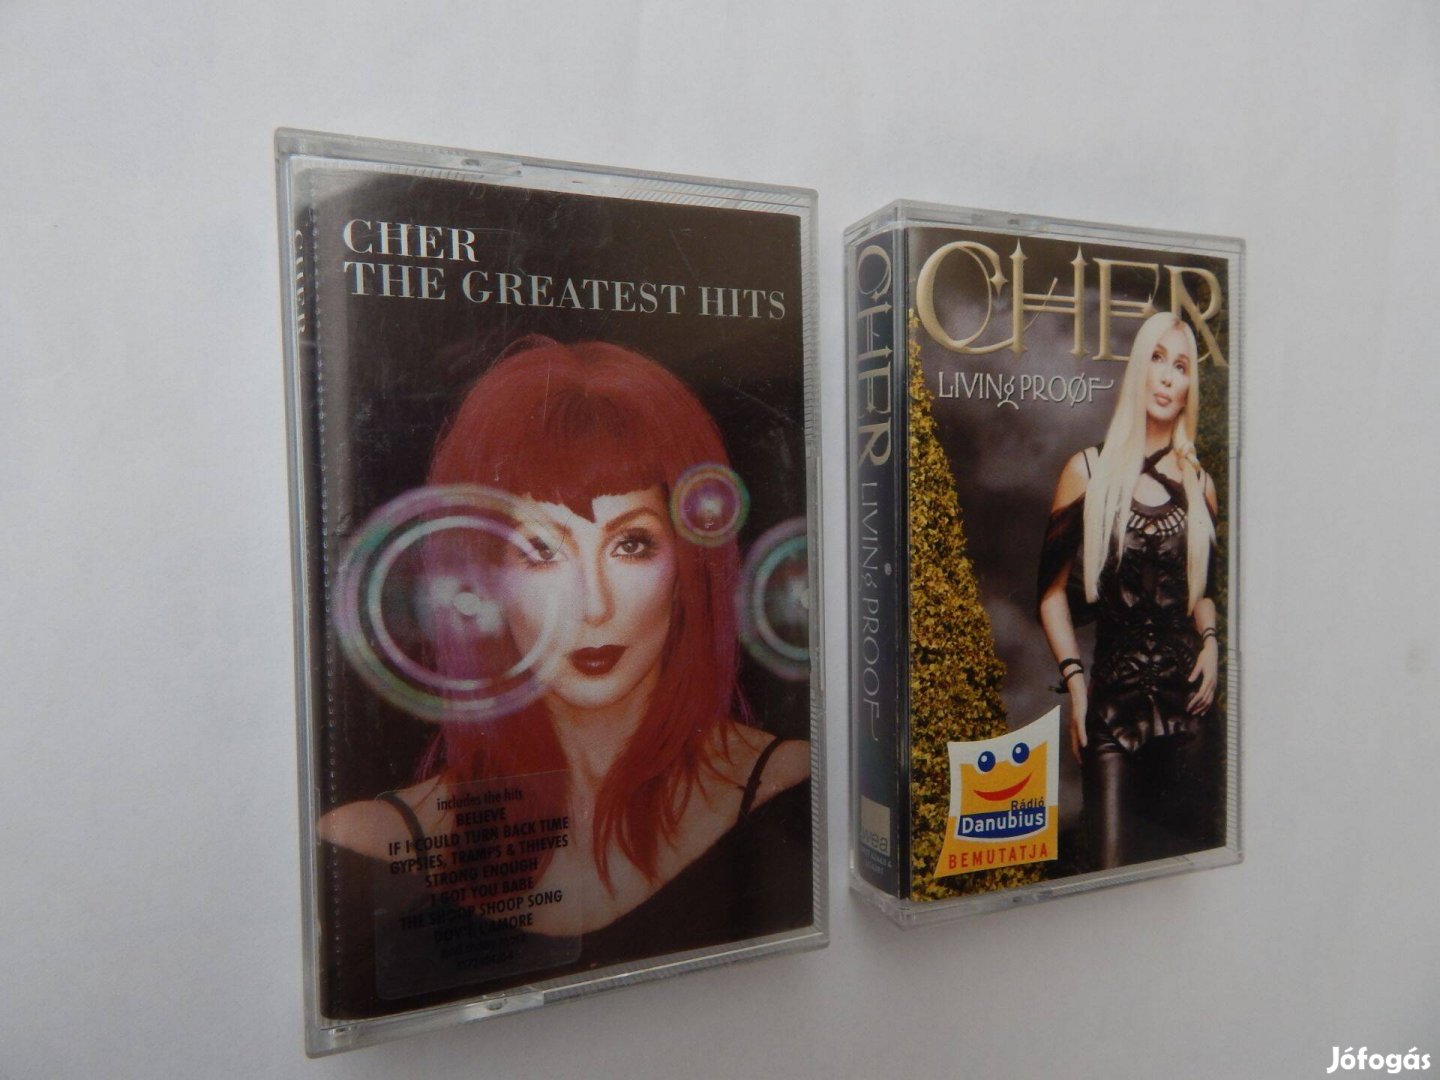 Cher Műsoros Audió kazetták 2 darabos szettben Eredeti